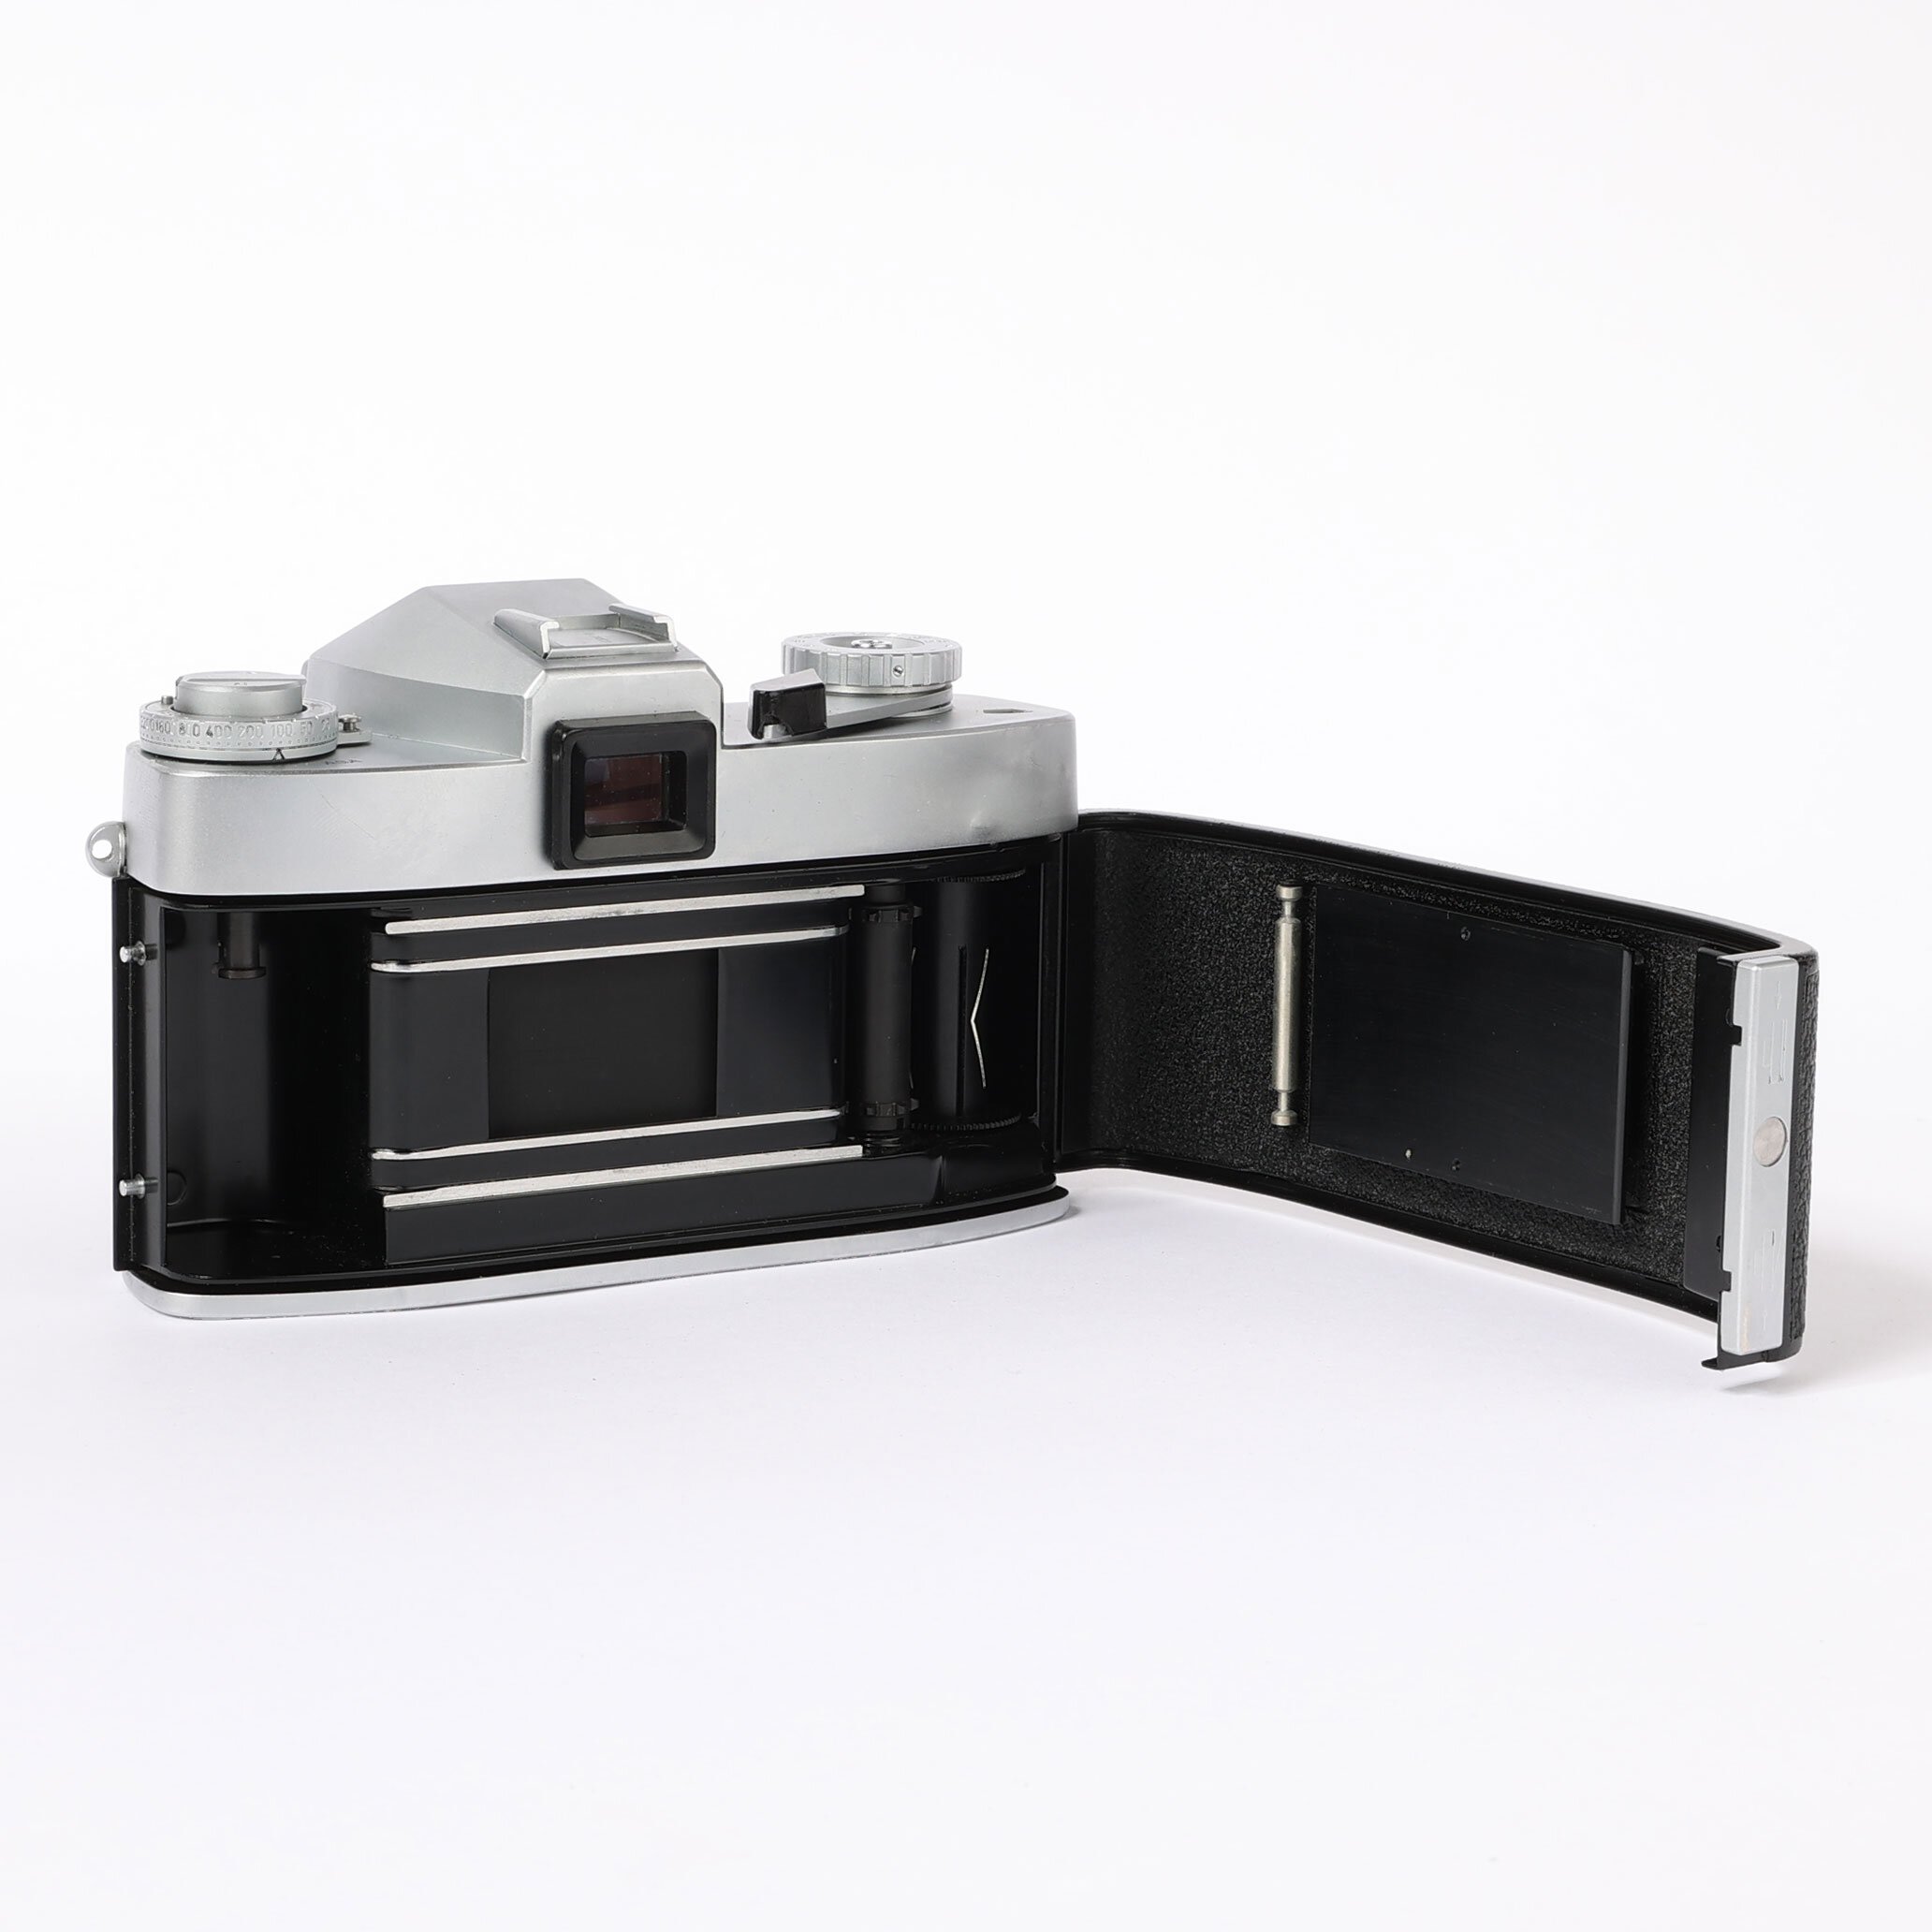 Leicaflex Chrom Summicron-R 2/50mm